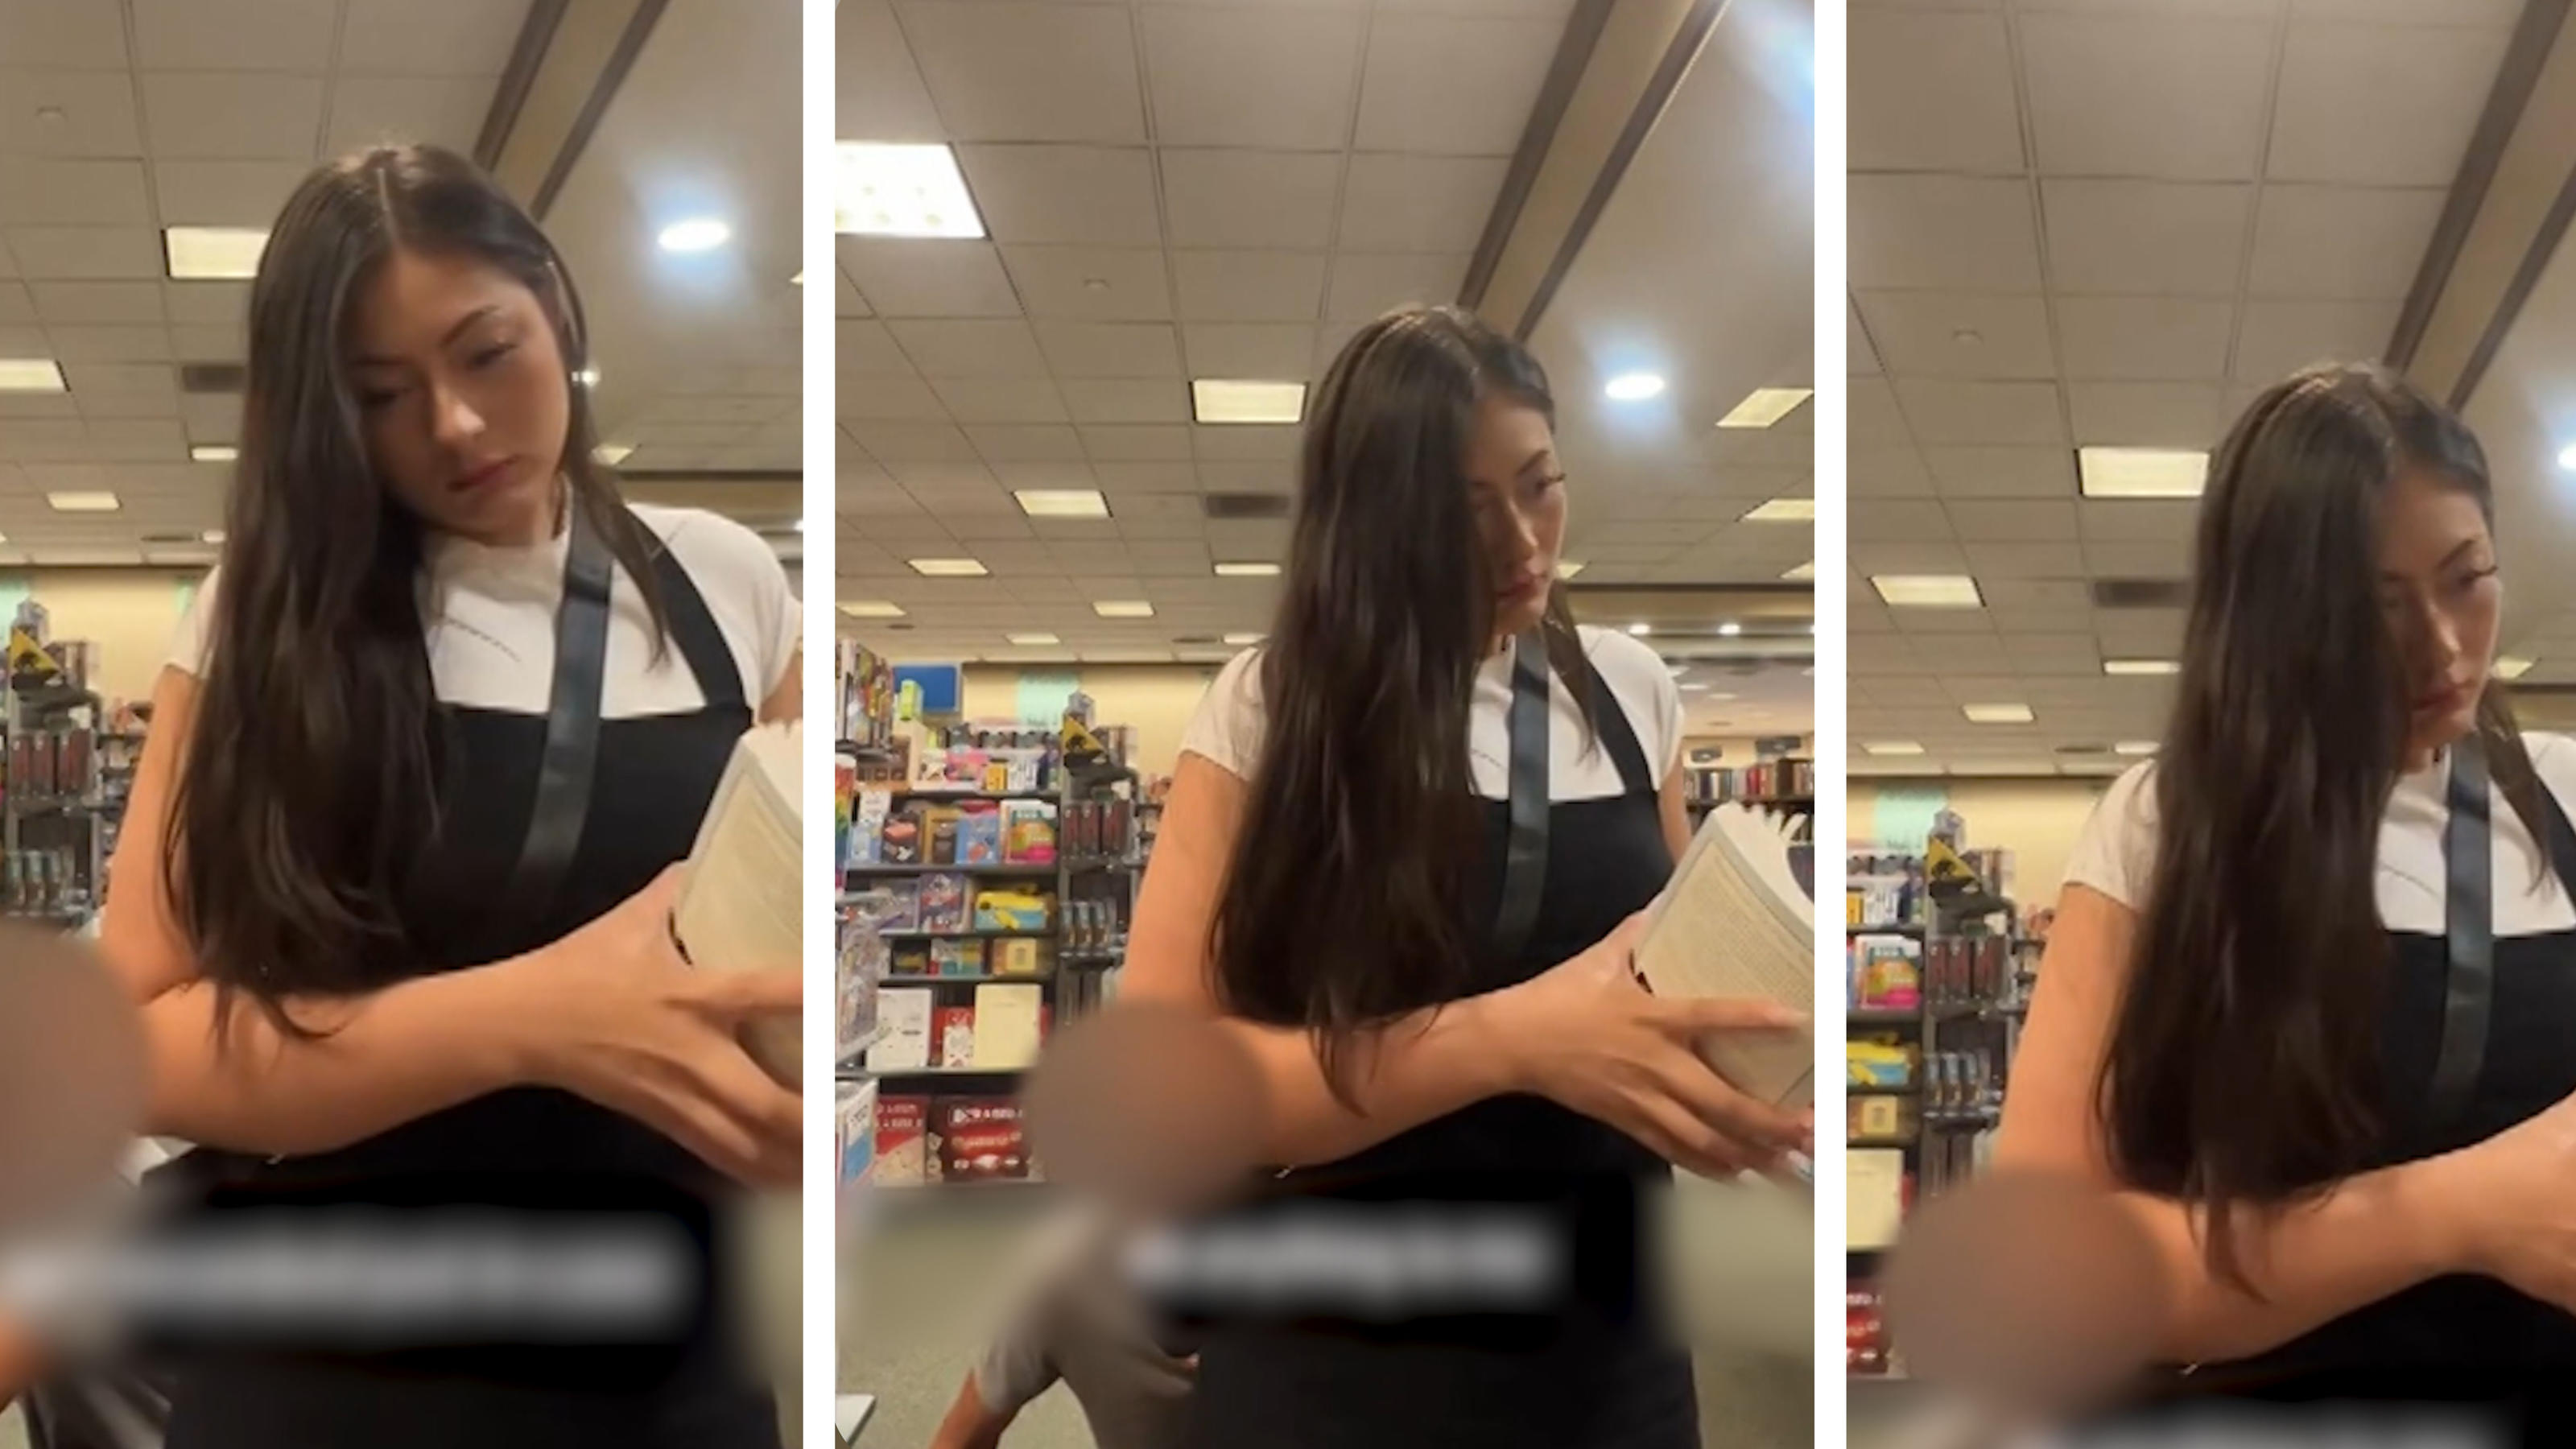 Un uomo che si avvicina di soppiatto a una donna in una libreria le sente il culo?